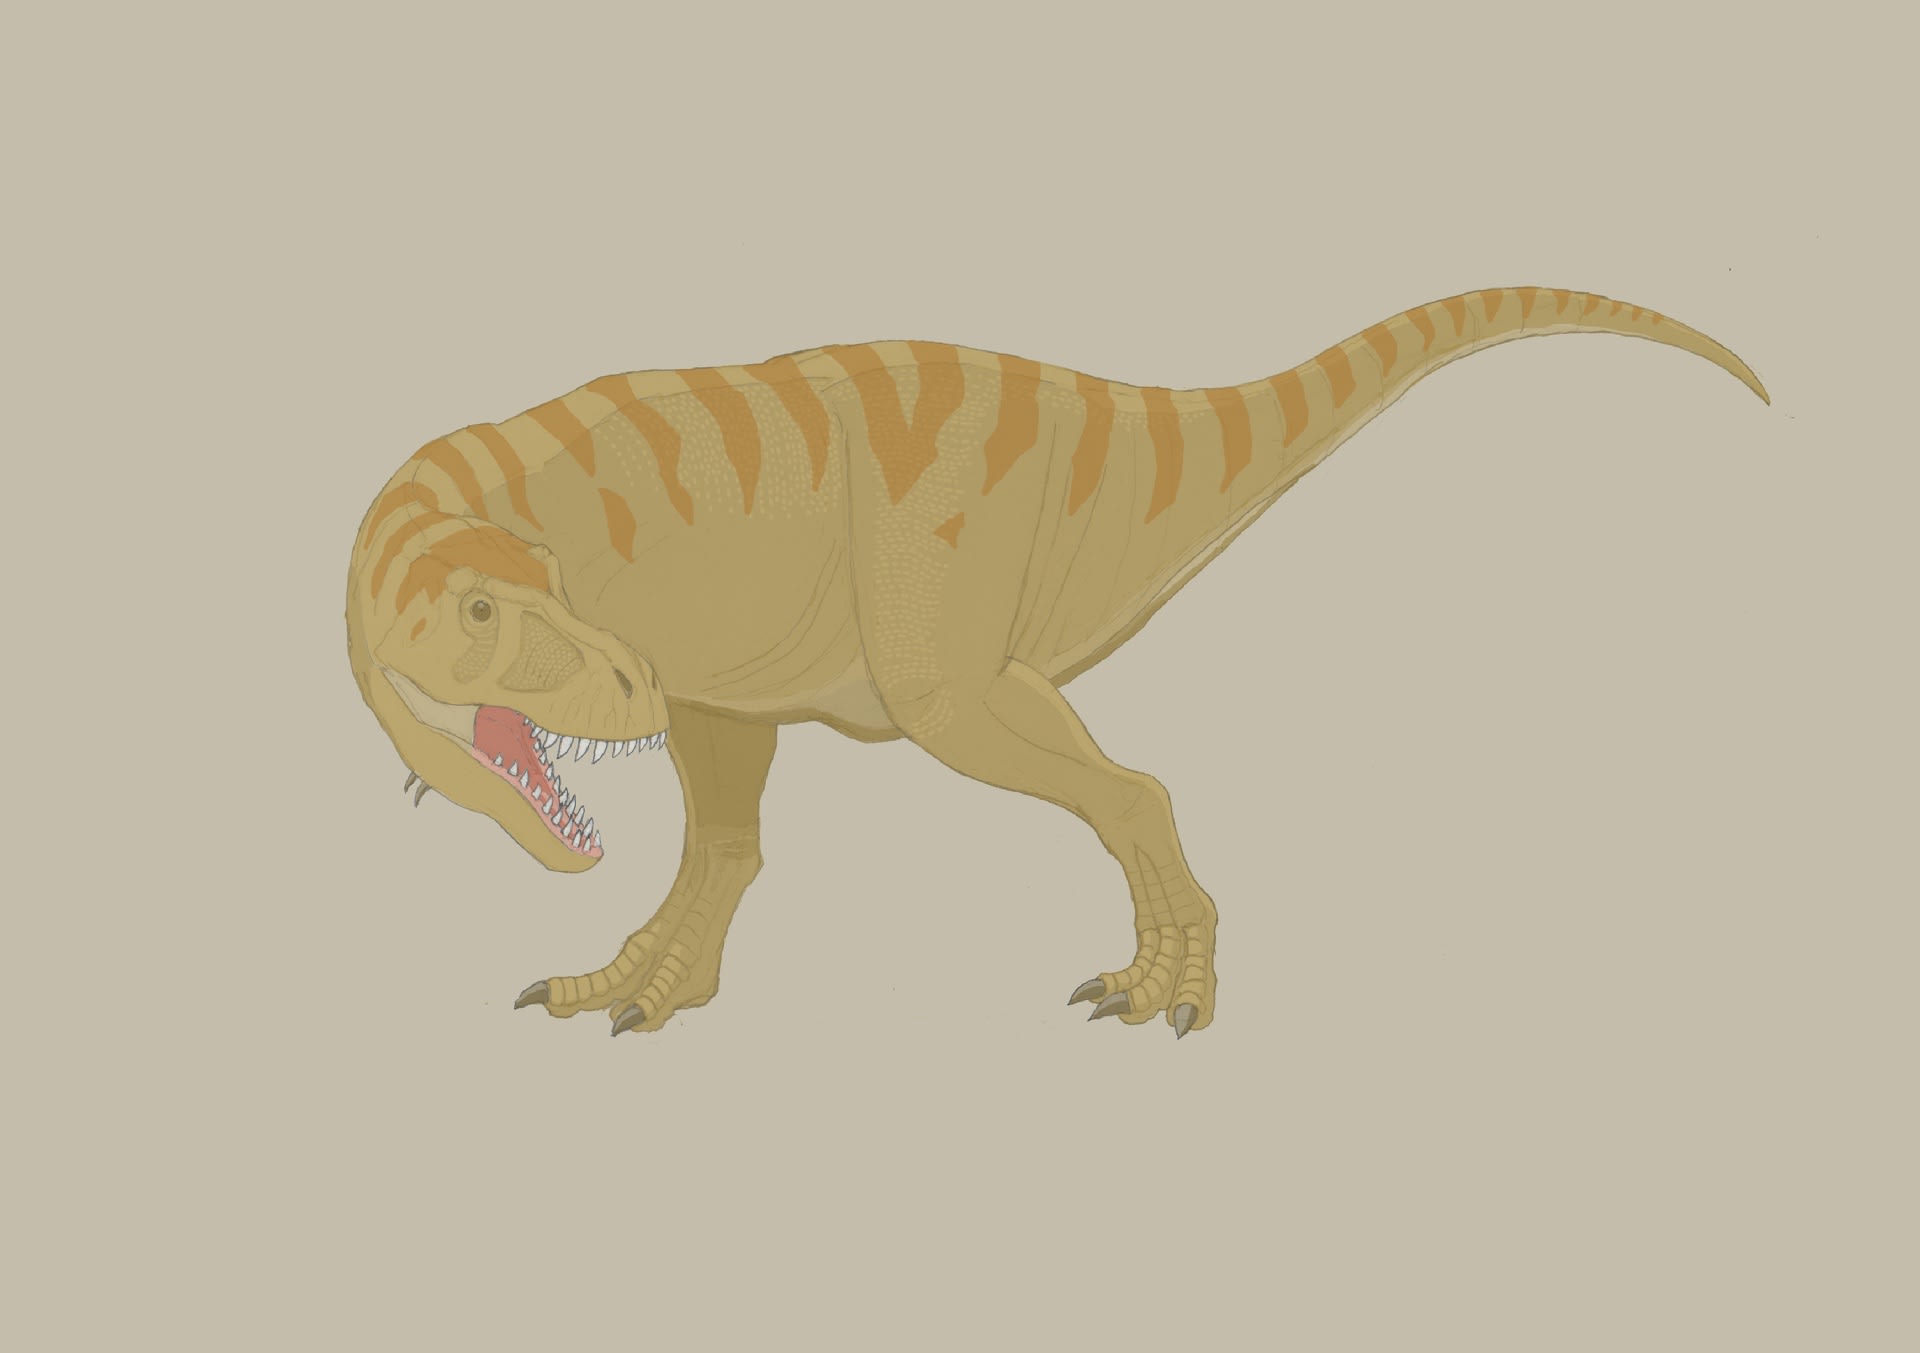 ティラノサウルス科 のブログ記事一覧 肉食の系譜